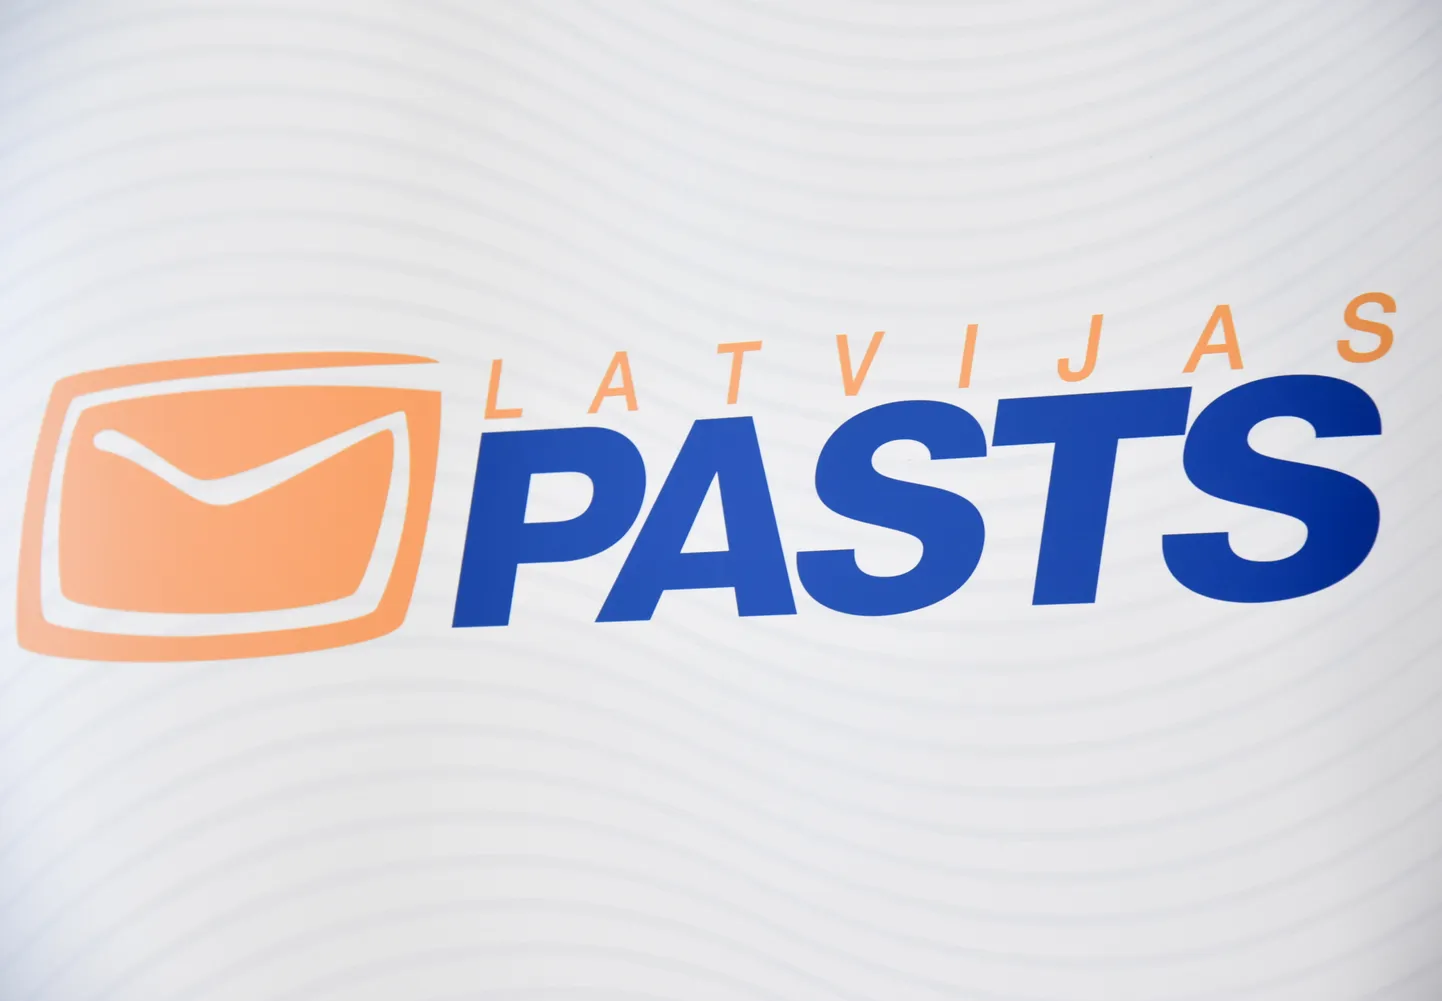 VAS "Latvijas pasts" logo.